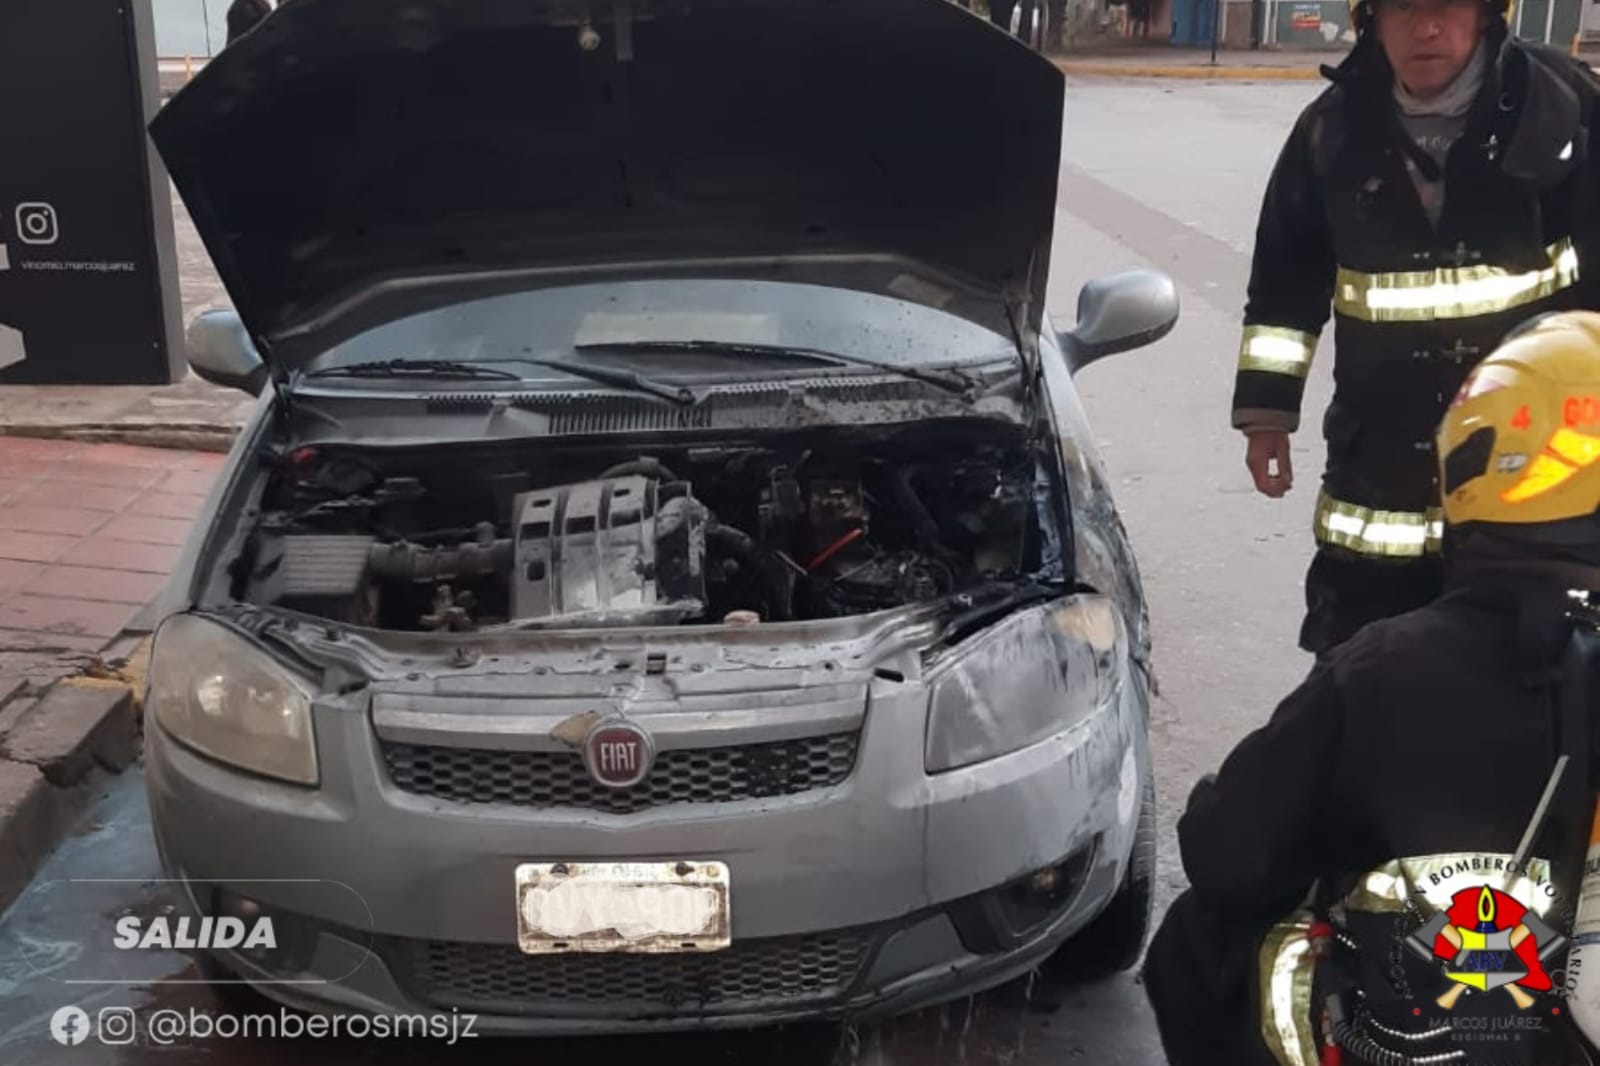 El propietario del vehículo logró extinguir el incendio por sus propios medios